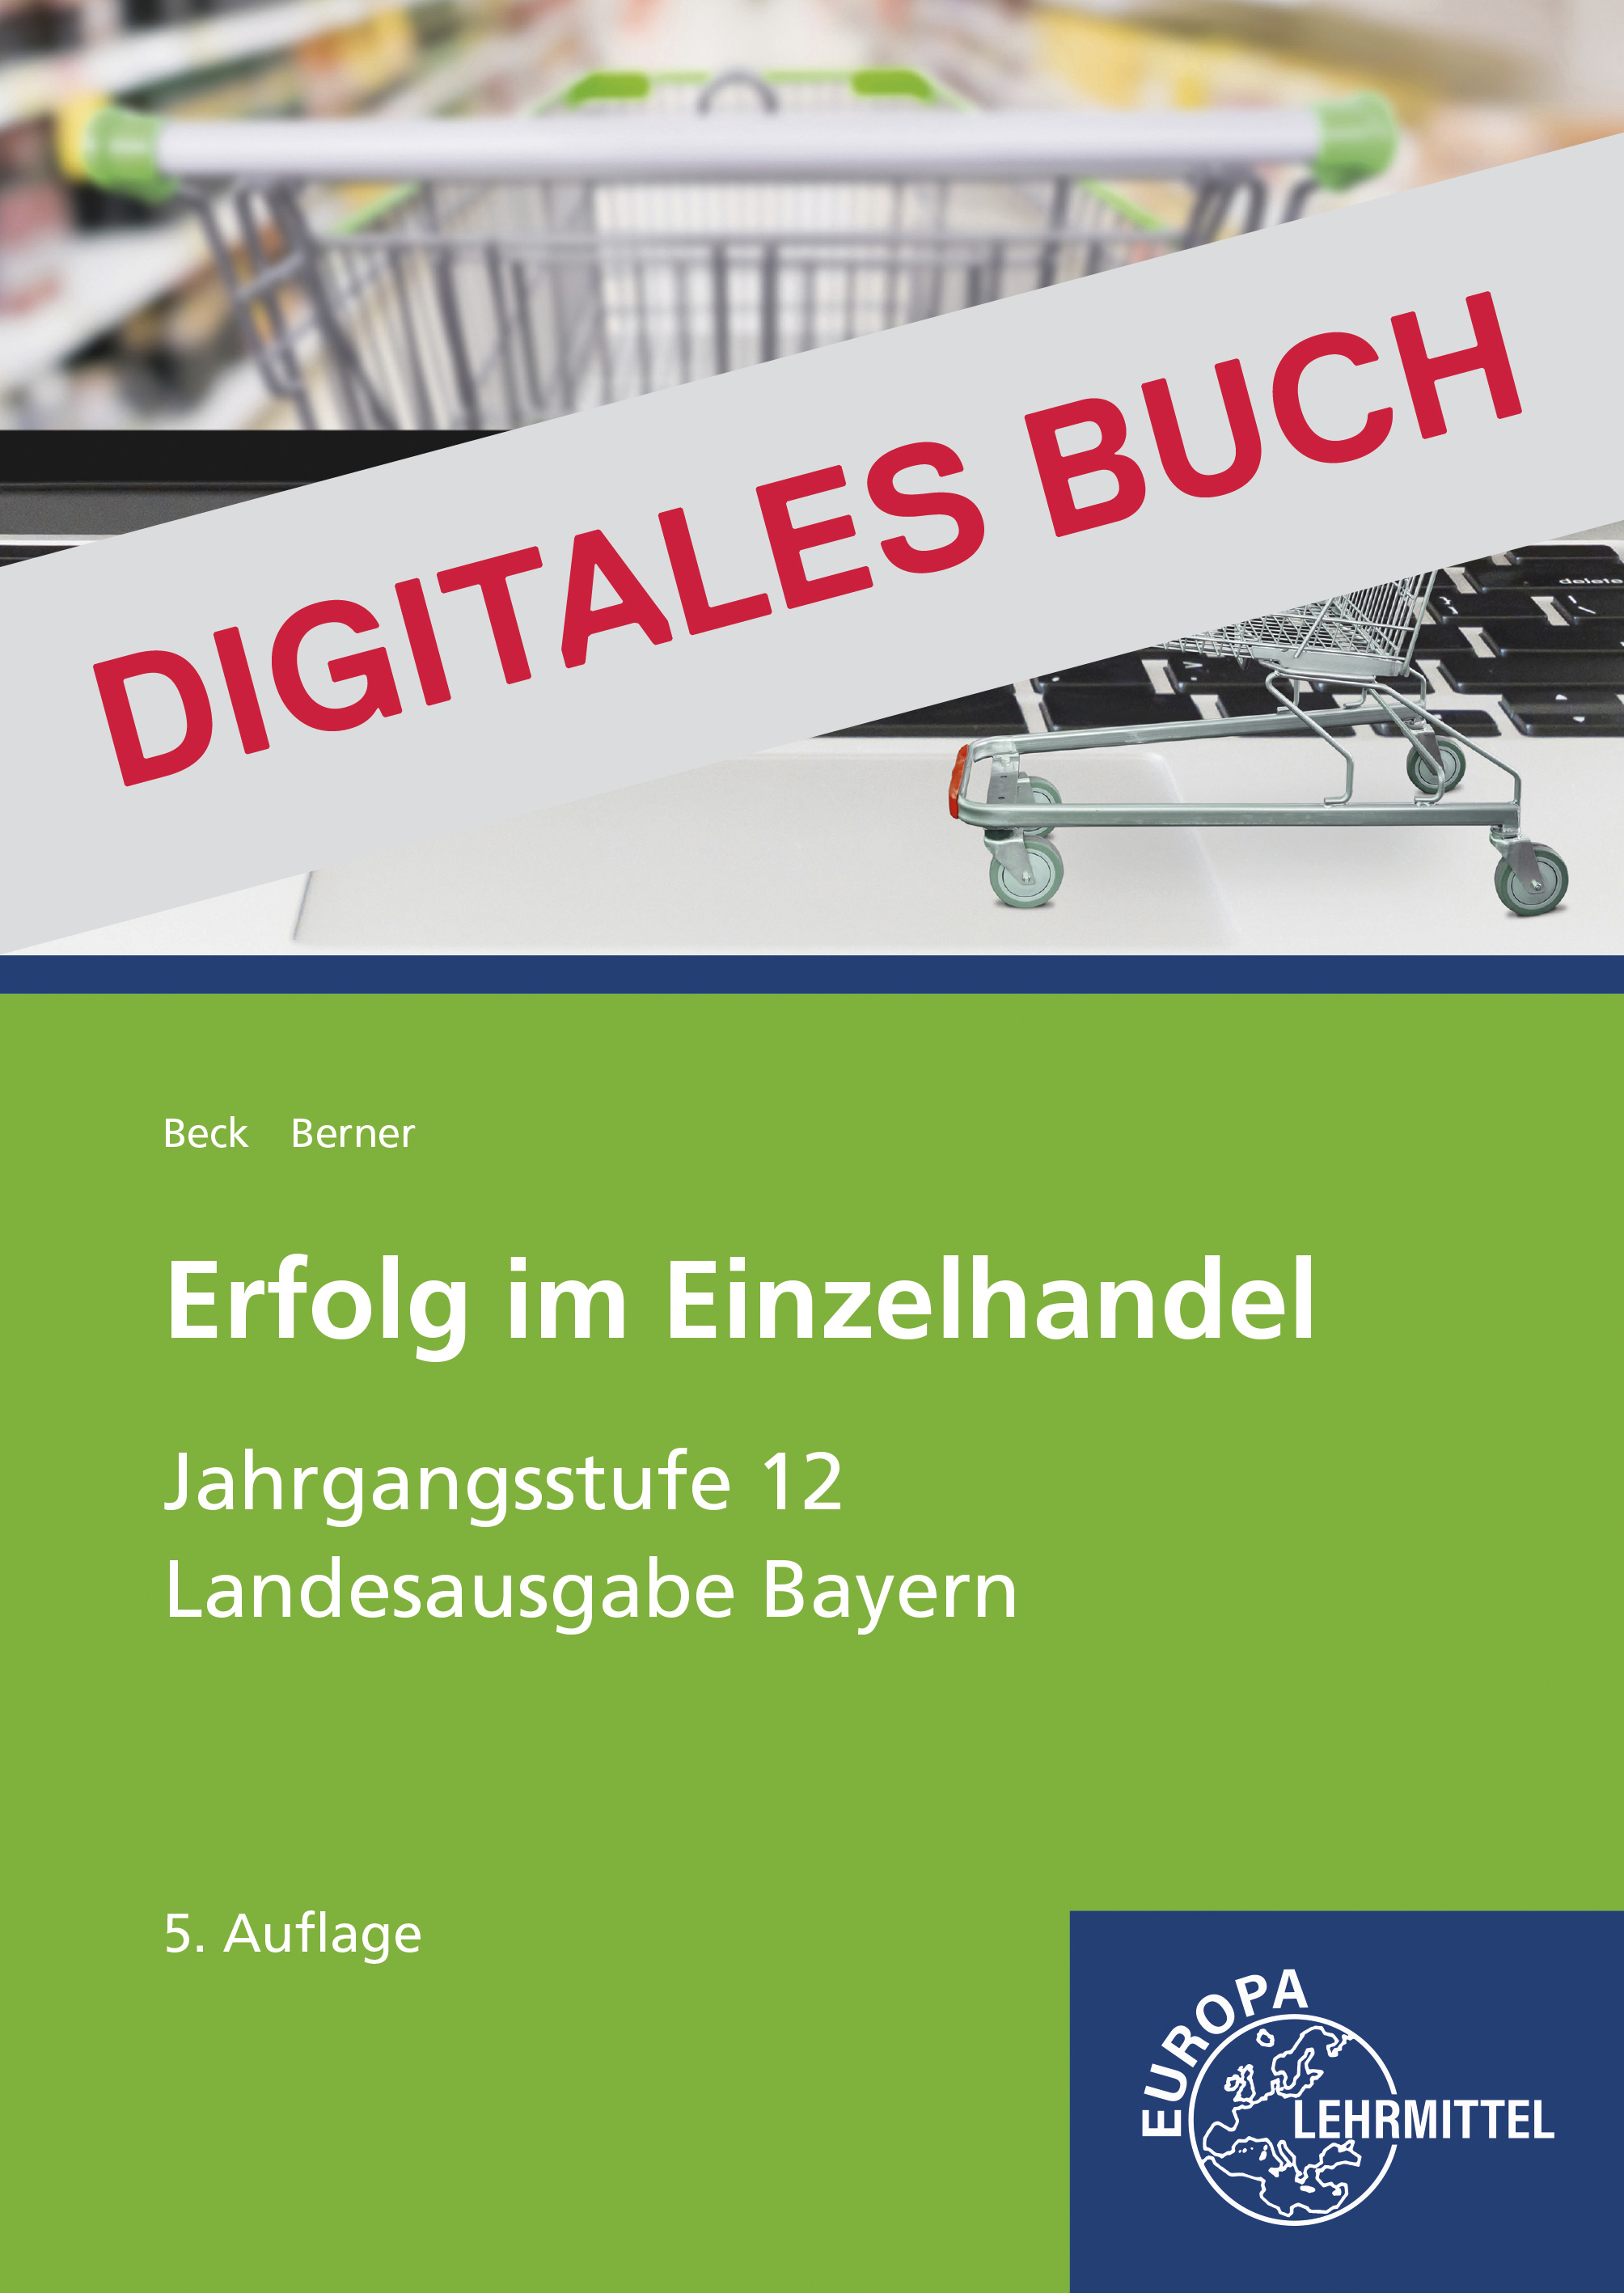 Erfolg im Einzelhandel Jgst. 12 (Bayern) - Digitales Buch